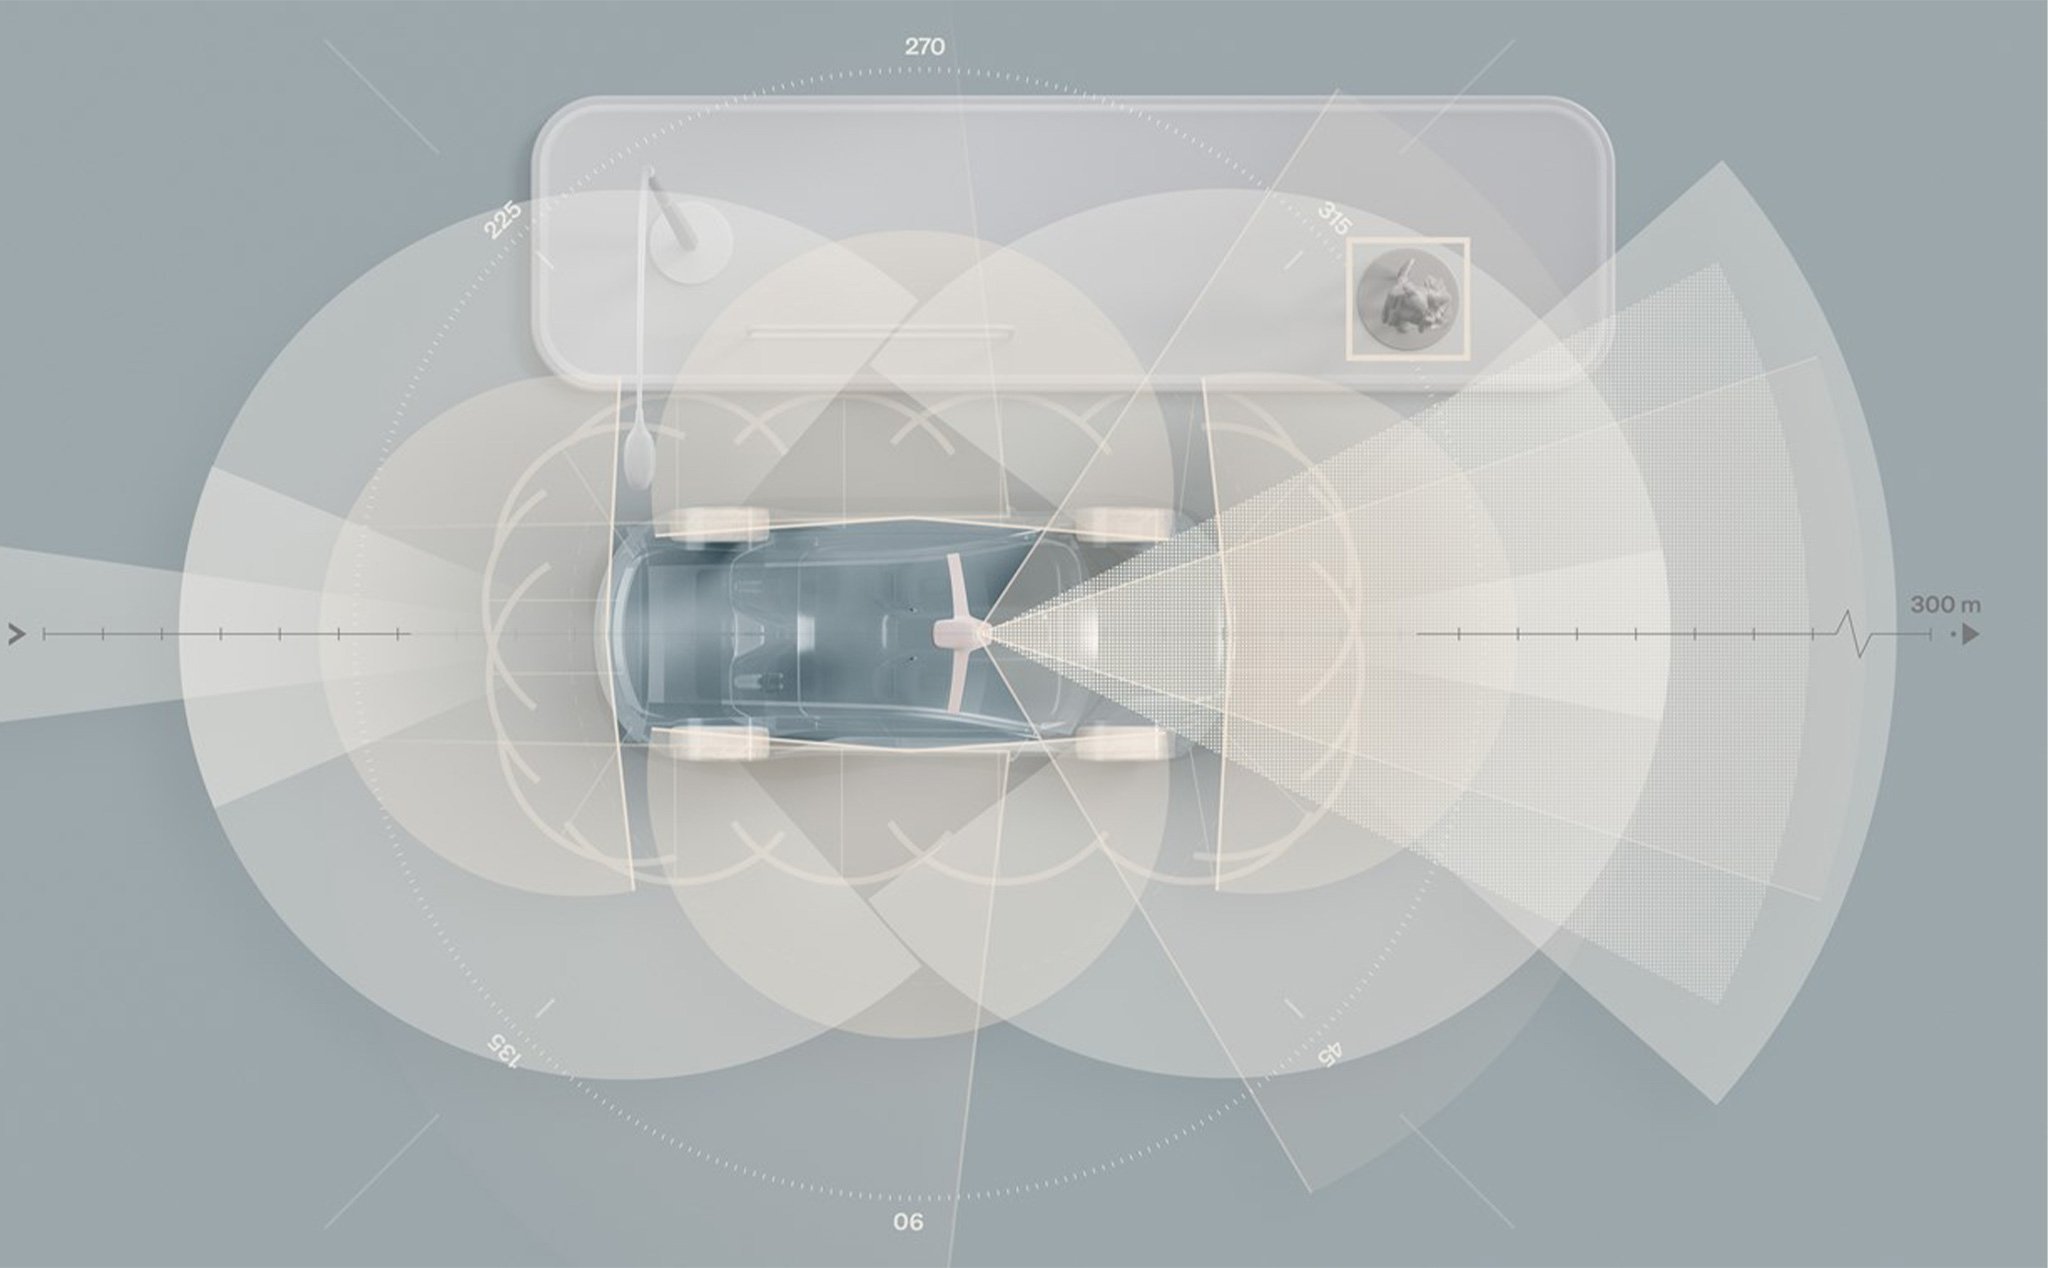 Xe hơi Volvo sắp tới sẽ dùng công nghệ LiDAR và AI để tạo ra chuẩn mực an toàn mới